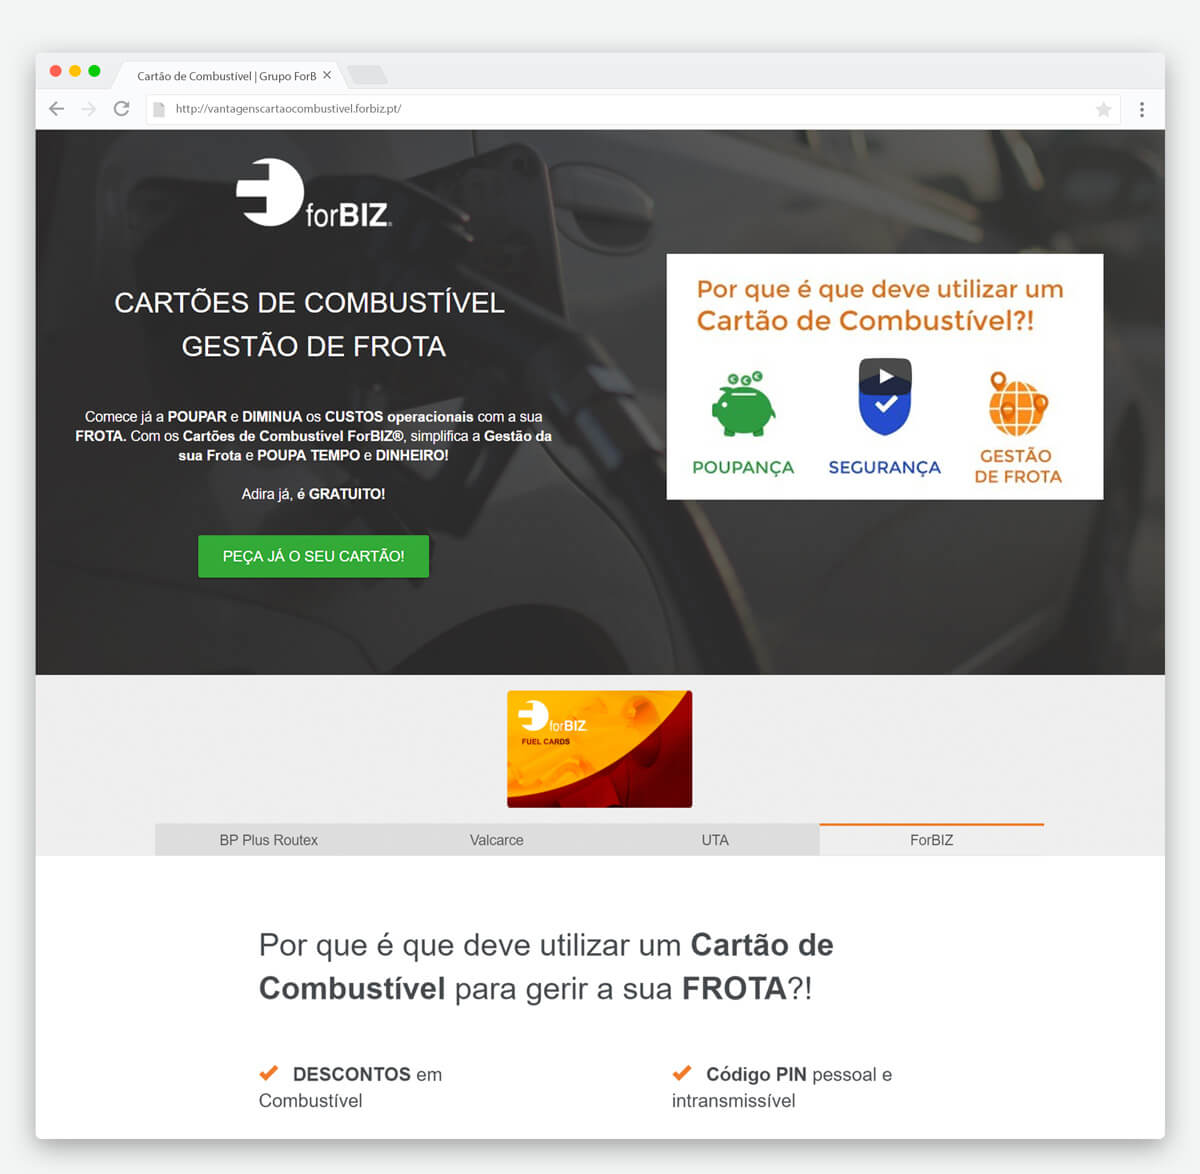 Website Vantagens Cartão Combustível